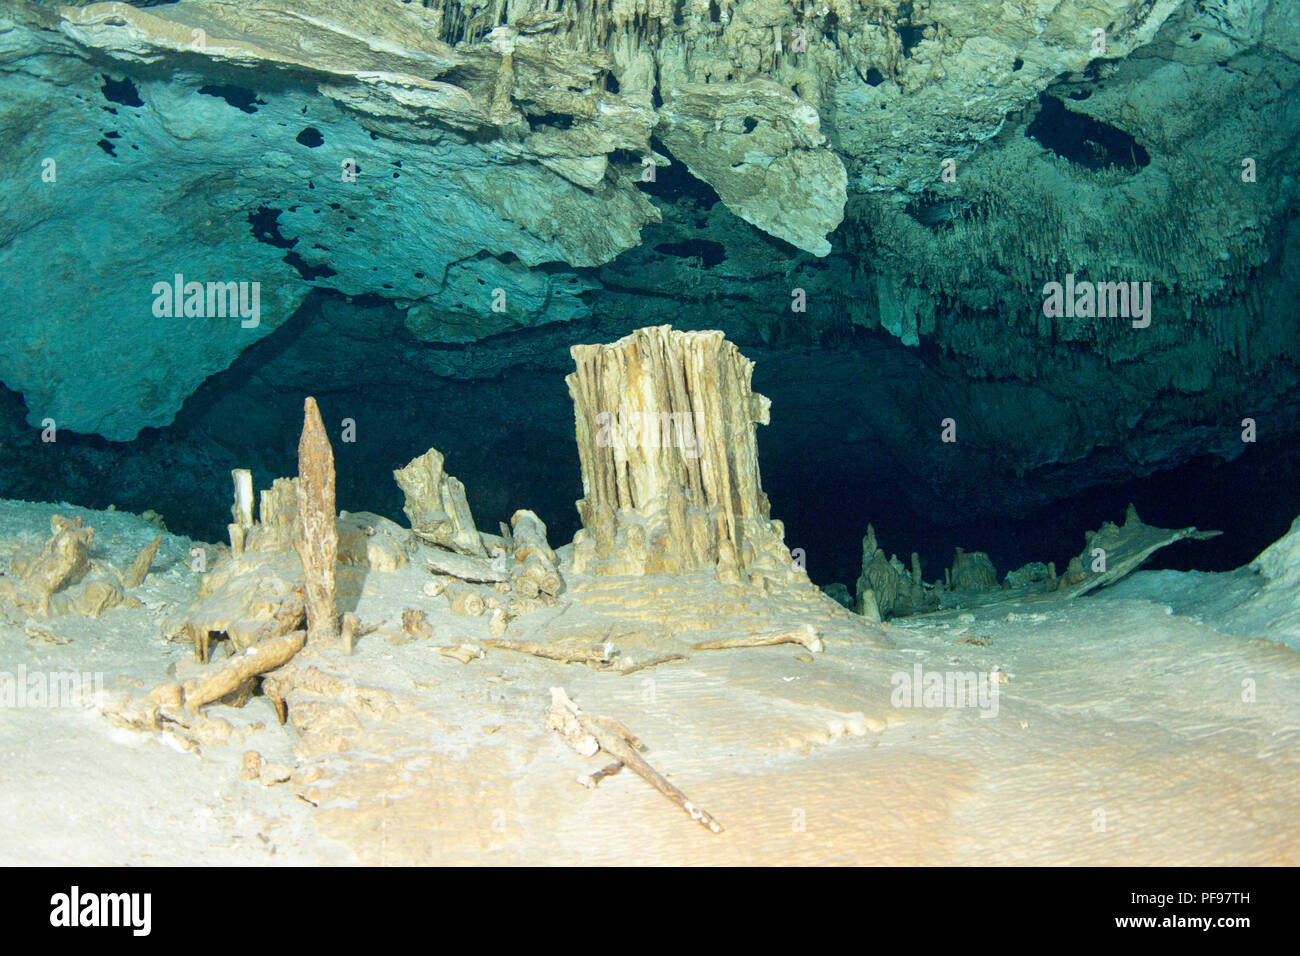 Stalagmites in the underwater cave Cenote Tajma Ha, Playa del Carmen, Quintana Roo, Mexico Stock Photo